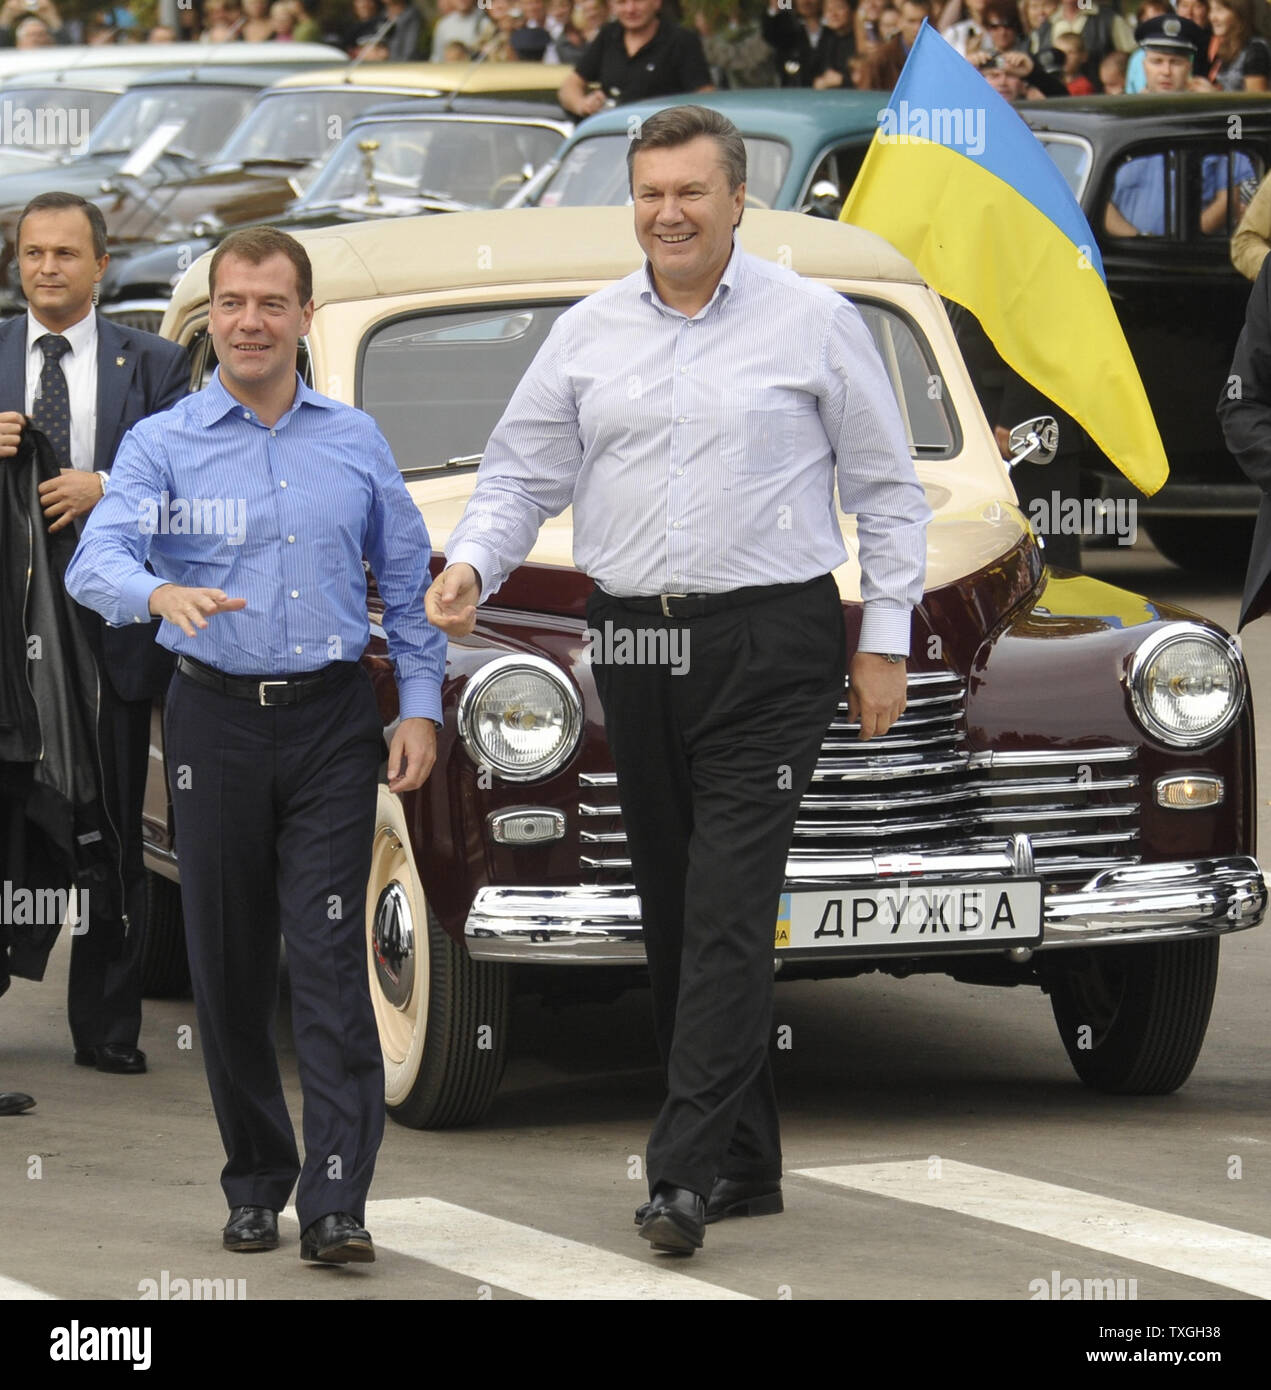 Der russische Präsident Dmitri Medwedew (L) und seinem ukrainischen Amtskollegen Viktor Janukowitsch in einem Oldtimer Rallye von St. Petersburg nach Kiew in der Nähe der Grenze Stadt Bryansk September 17, 2010. UPI Foto/Alex Volgin.. Stockfoto